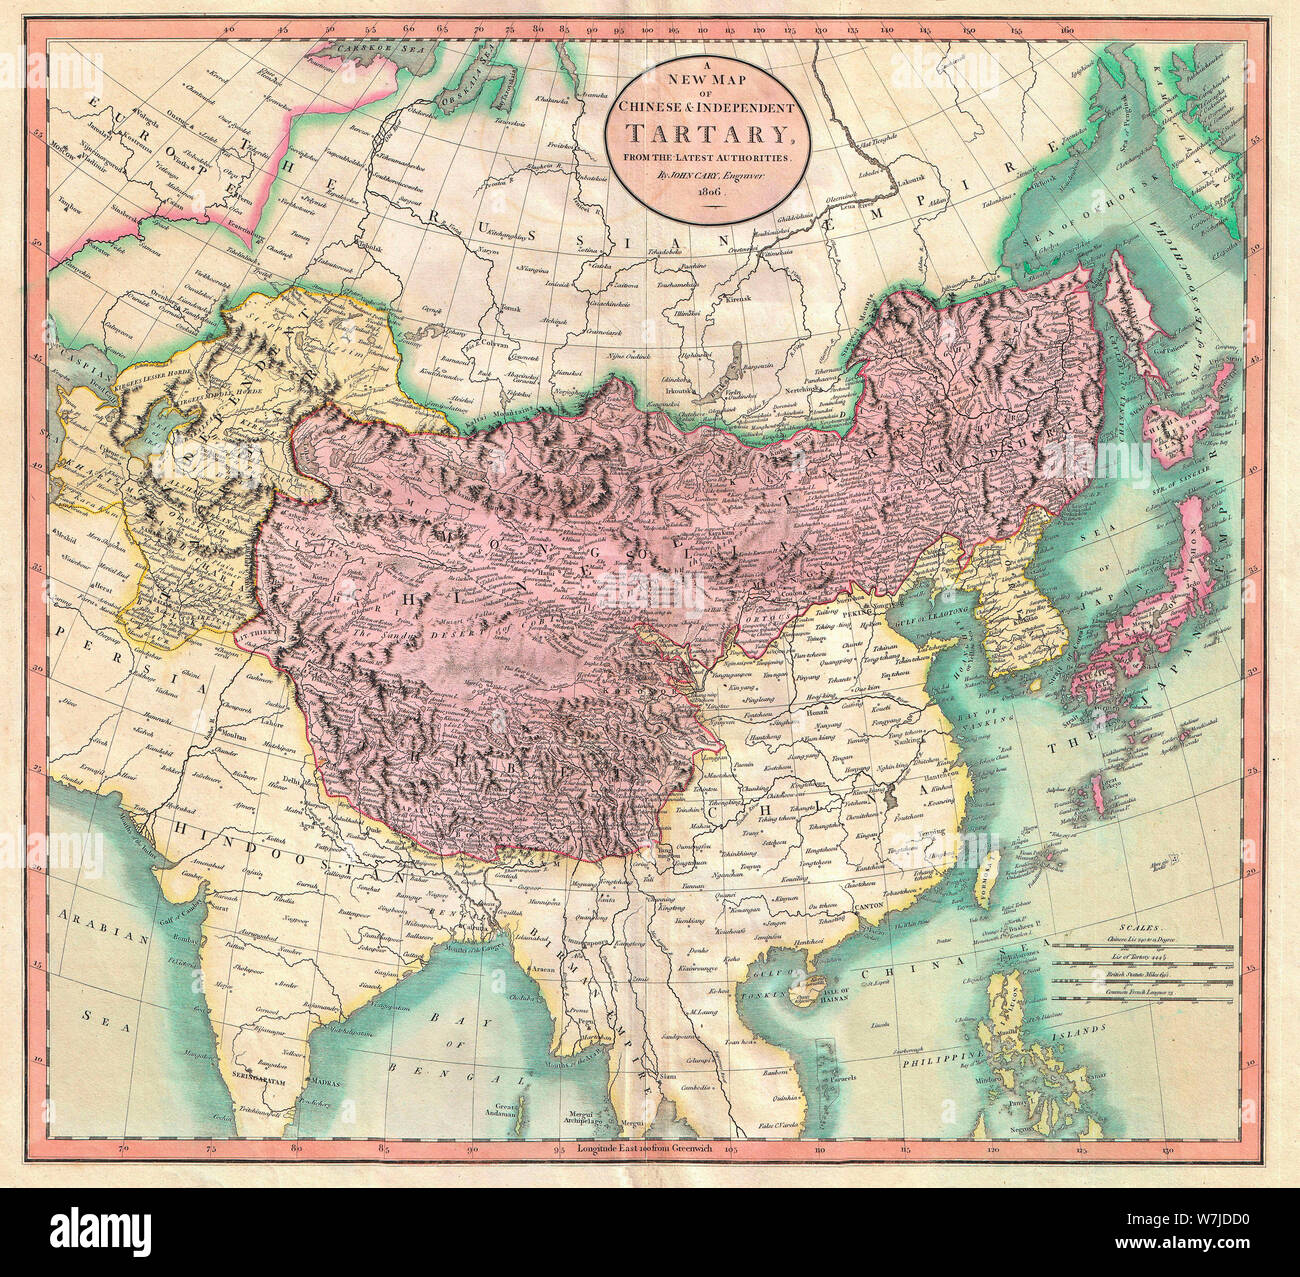 Une nouvelle Carte de Tartarie indépendante & Chinois - un très bel exemple de John Cary est important 1806 Carte de Tartarie indépendante et chinois. Couvre l'Asie centrale à partir de la mer Caspienne vers le Japon, s'étend au nord jusqu'à la mer Obskaia et aussi loin au sud que l'Inde, la Birmanie et les Philippines. Comprend les nations modernes de l'Ouzbékistan, le Kazakhstan, le Turkménistan, la Kirghizie, le Tadjikistan et la Mongolie. L'une des cartes les plus intéressants de Cary. L'Asie centrale, en dépit des centaines d'années de passage sur les routes de la soie, était encore, à la fin du siècle une terre largement inconnue. 1806 Banque D'Images